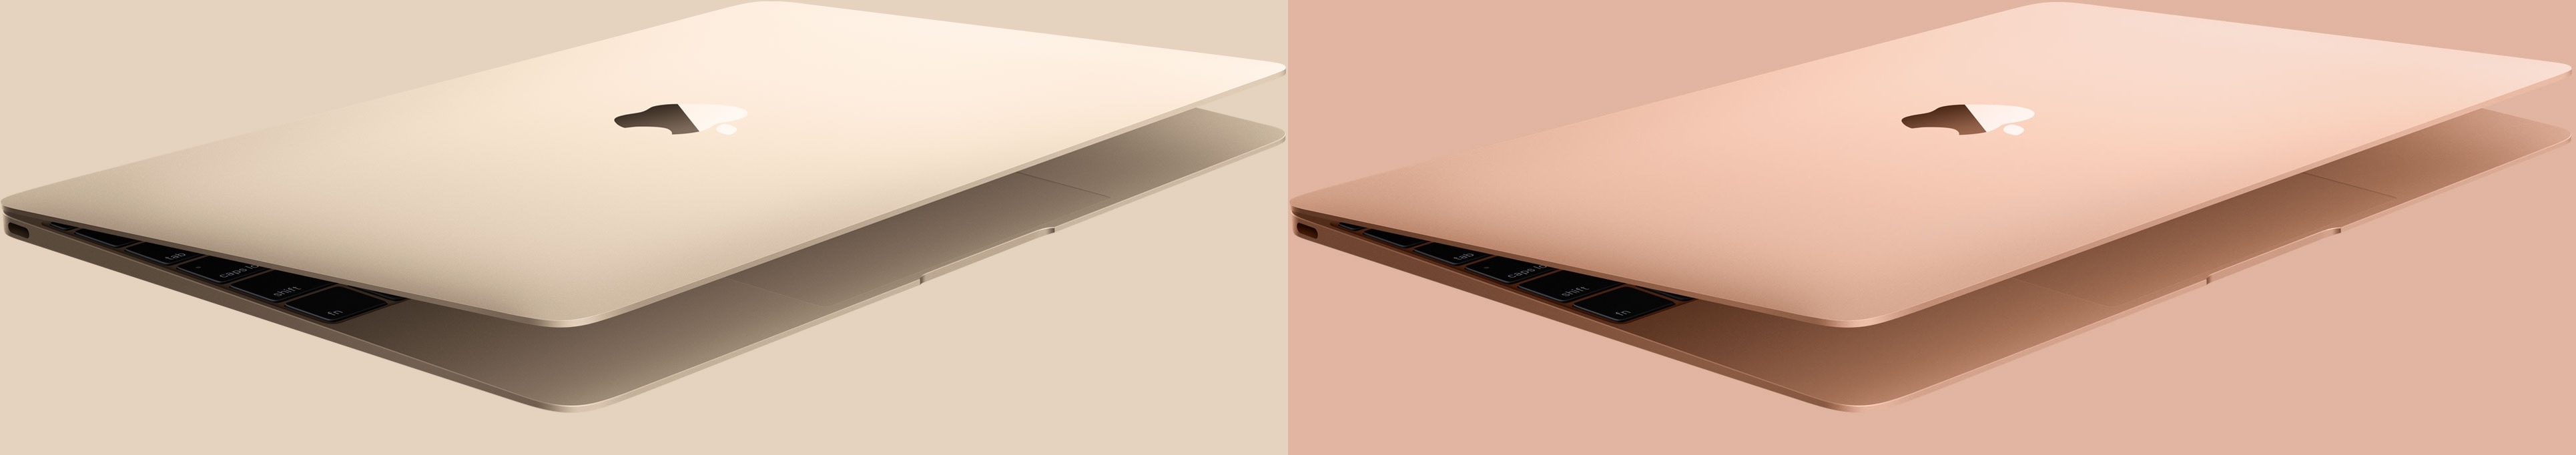 Golden MacBook (Old vs. New)